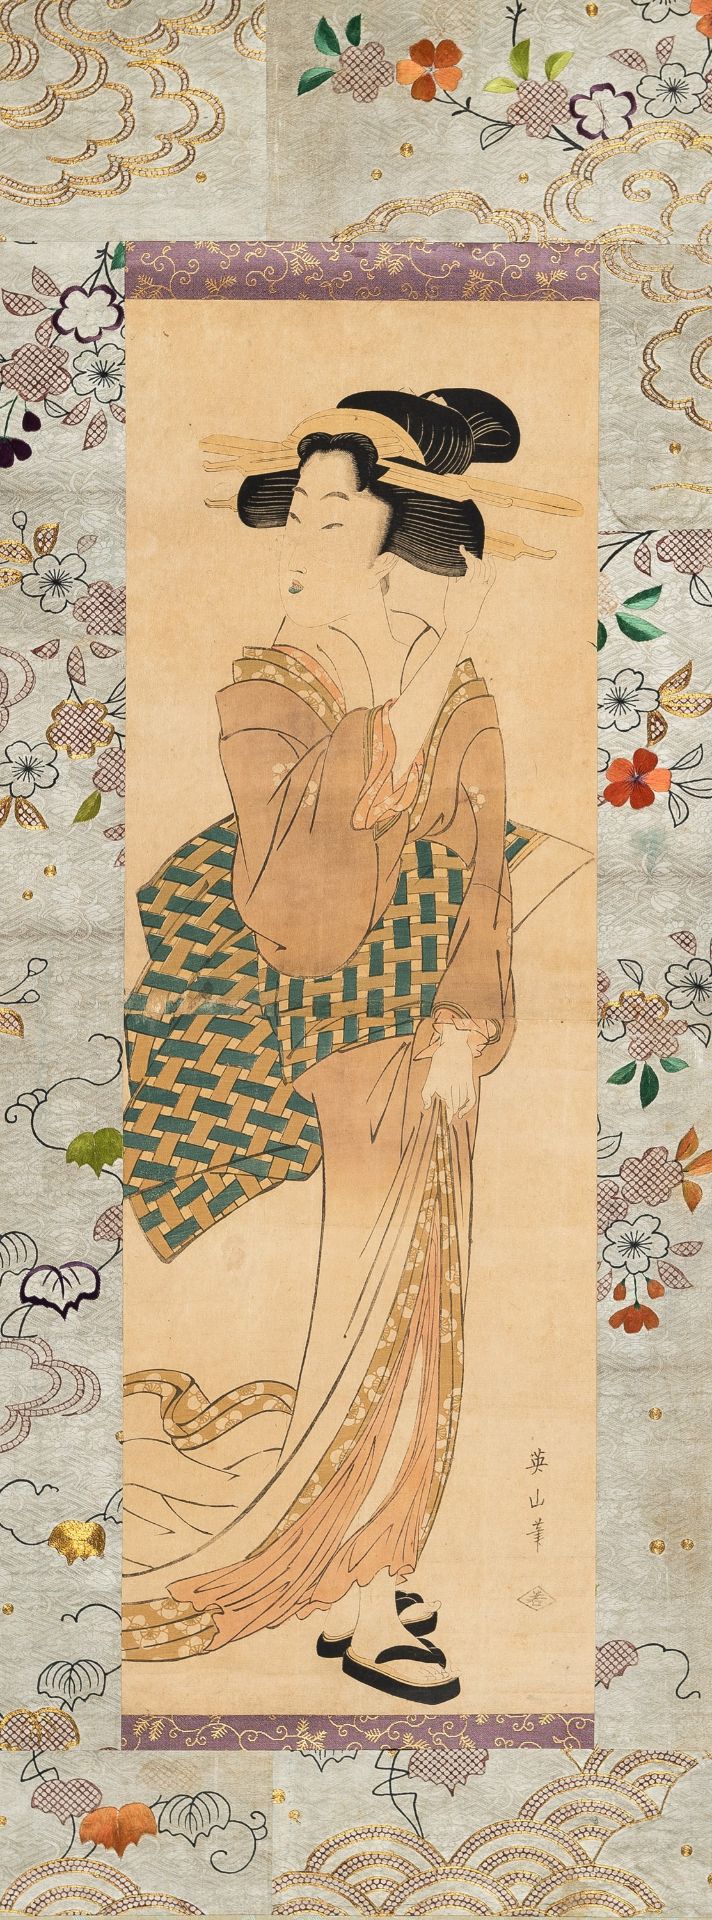 KIKUGAWA EIZAN (1787-1867): A TWO-PART COLOR WOODBLOCK PRINT KAKEMONO OF A BEAUTY